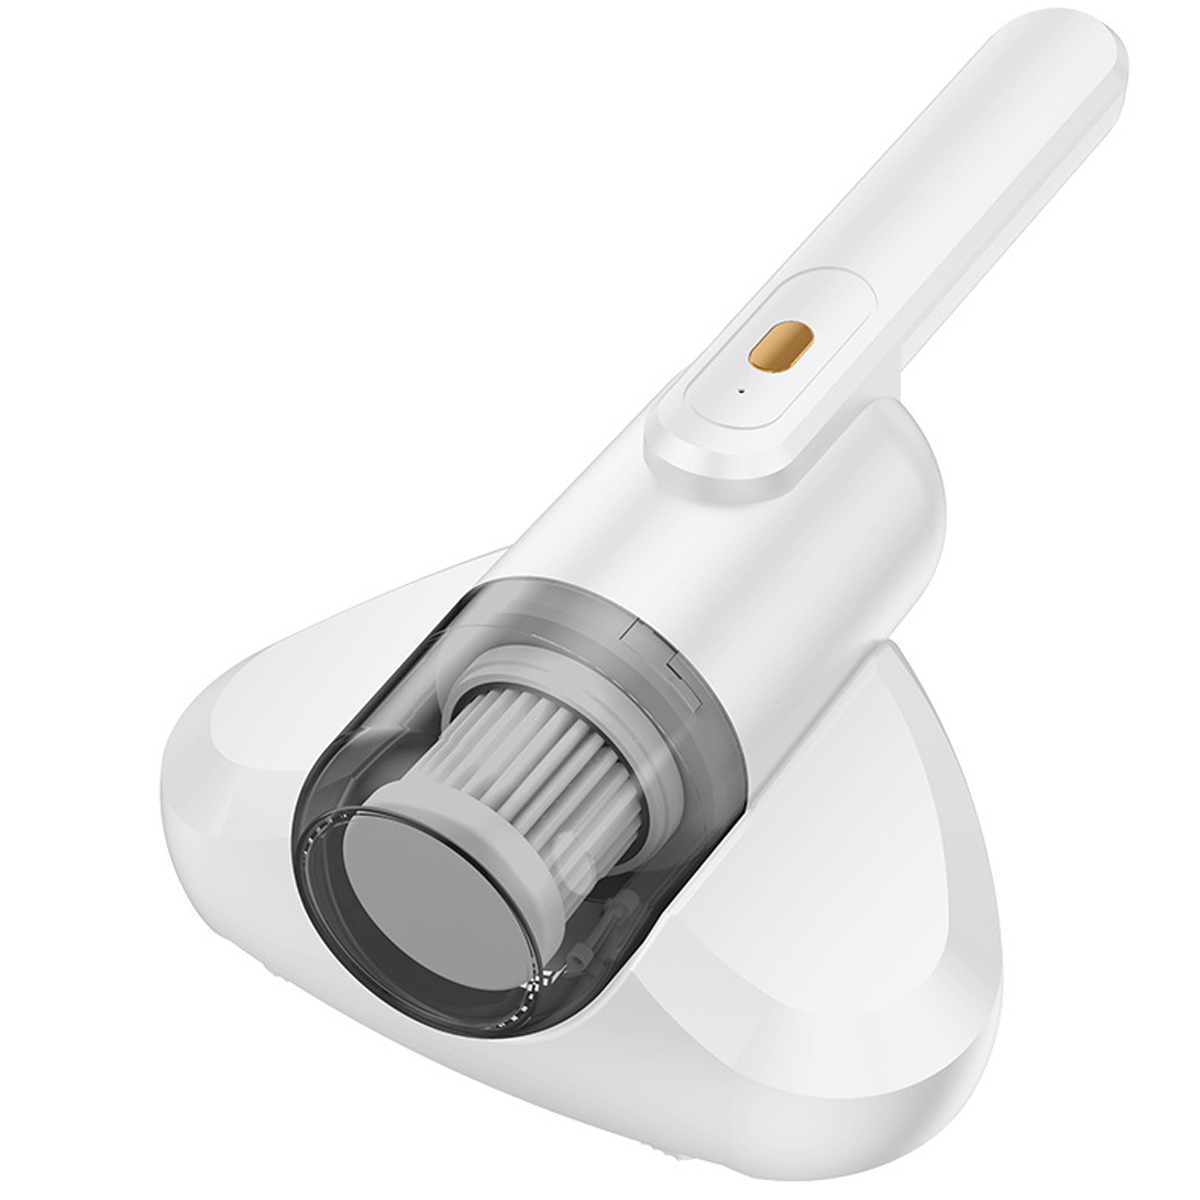 BRIGHTAKE Effizienter Staubsauger USB, Leichtigkeit - für Frische Luft Ihr Watt 60 Handstaubsauger, Zuhause Powered by und